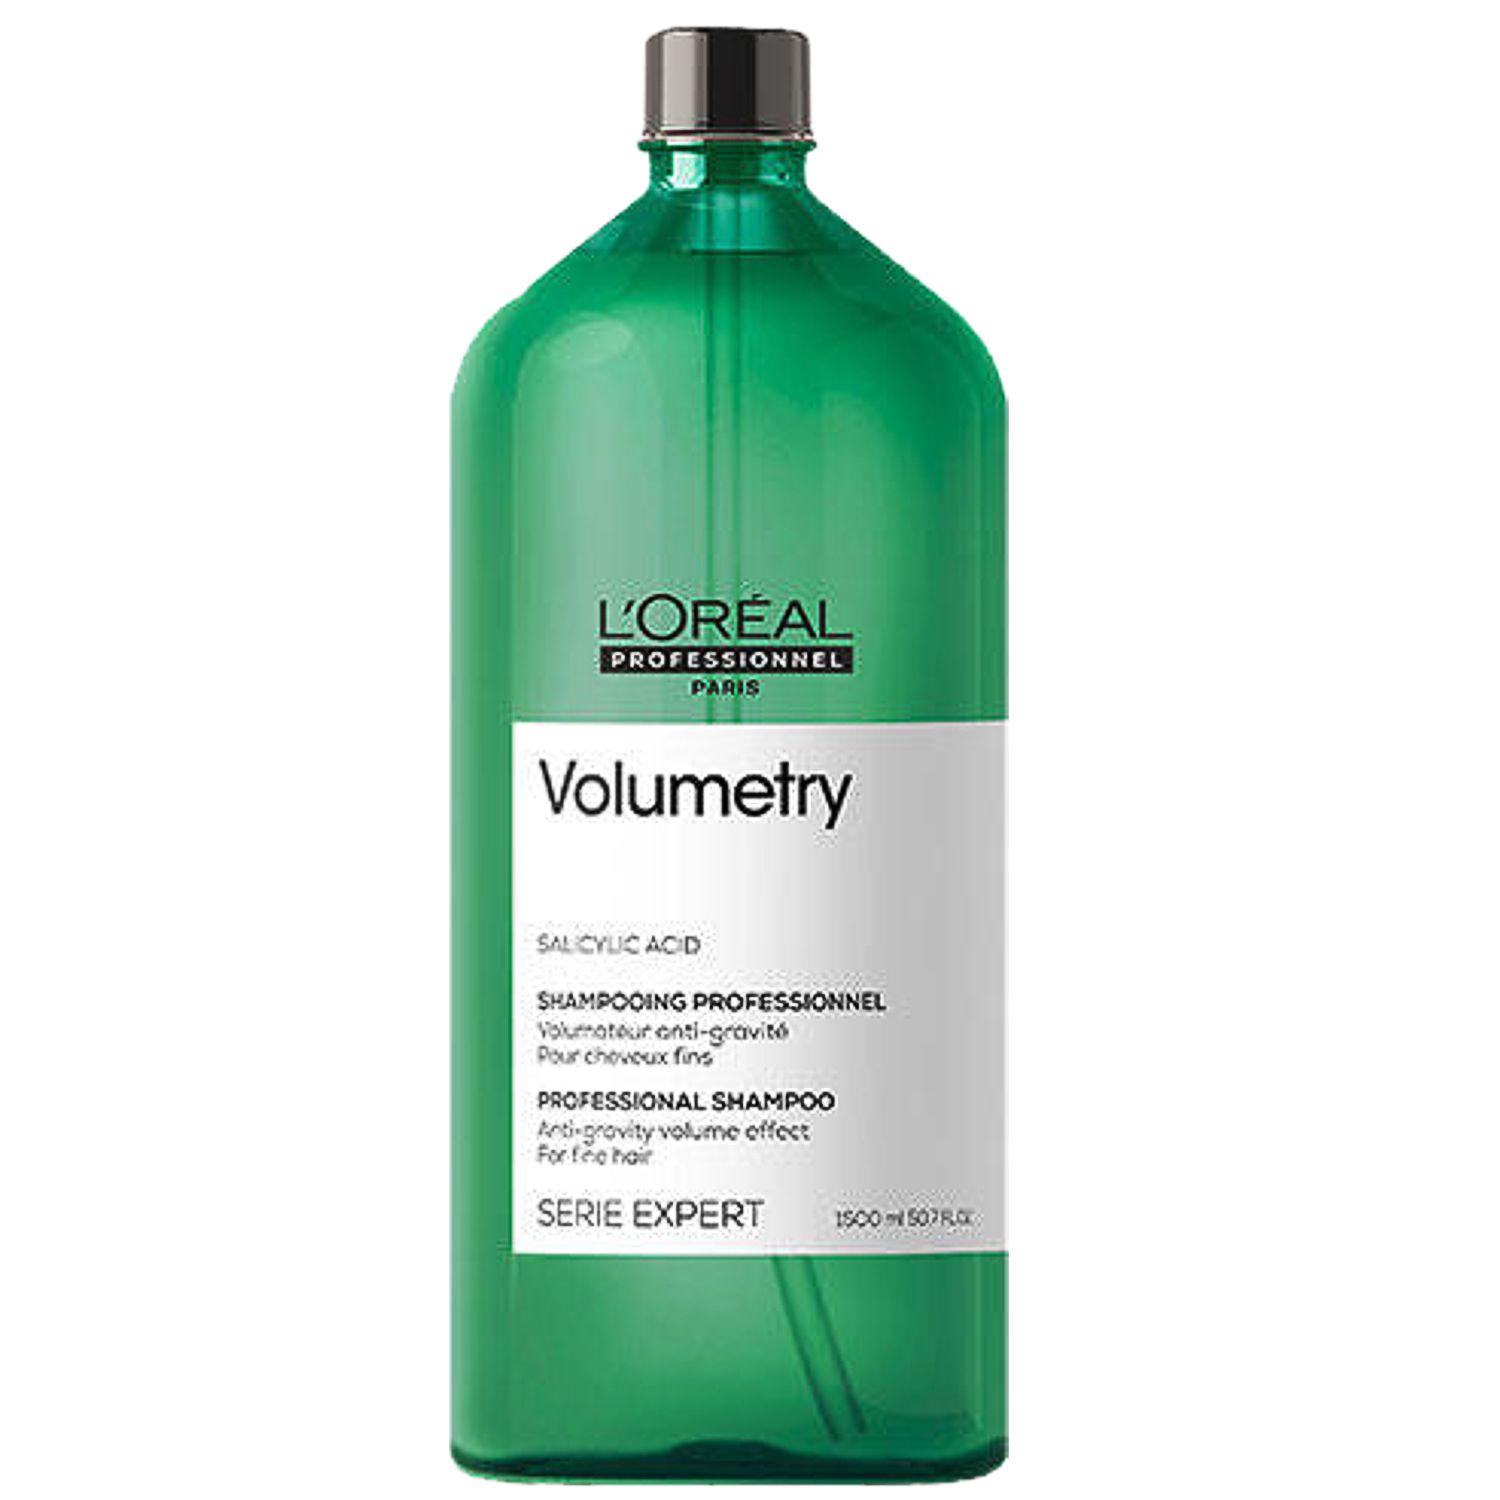 L'ORÉAL Expert VOLUMETRY Professional Shampoo 1,5 L